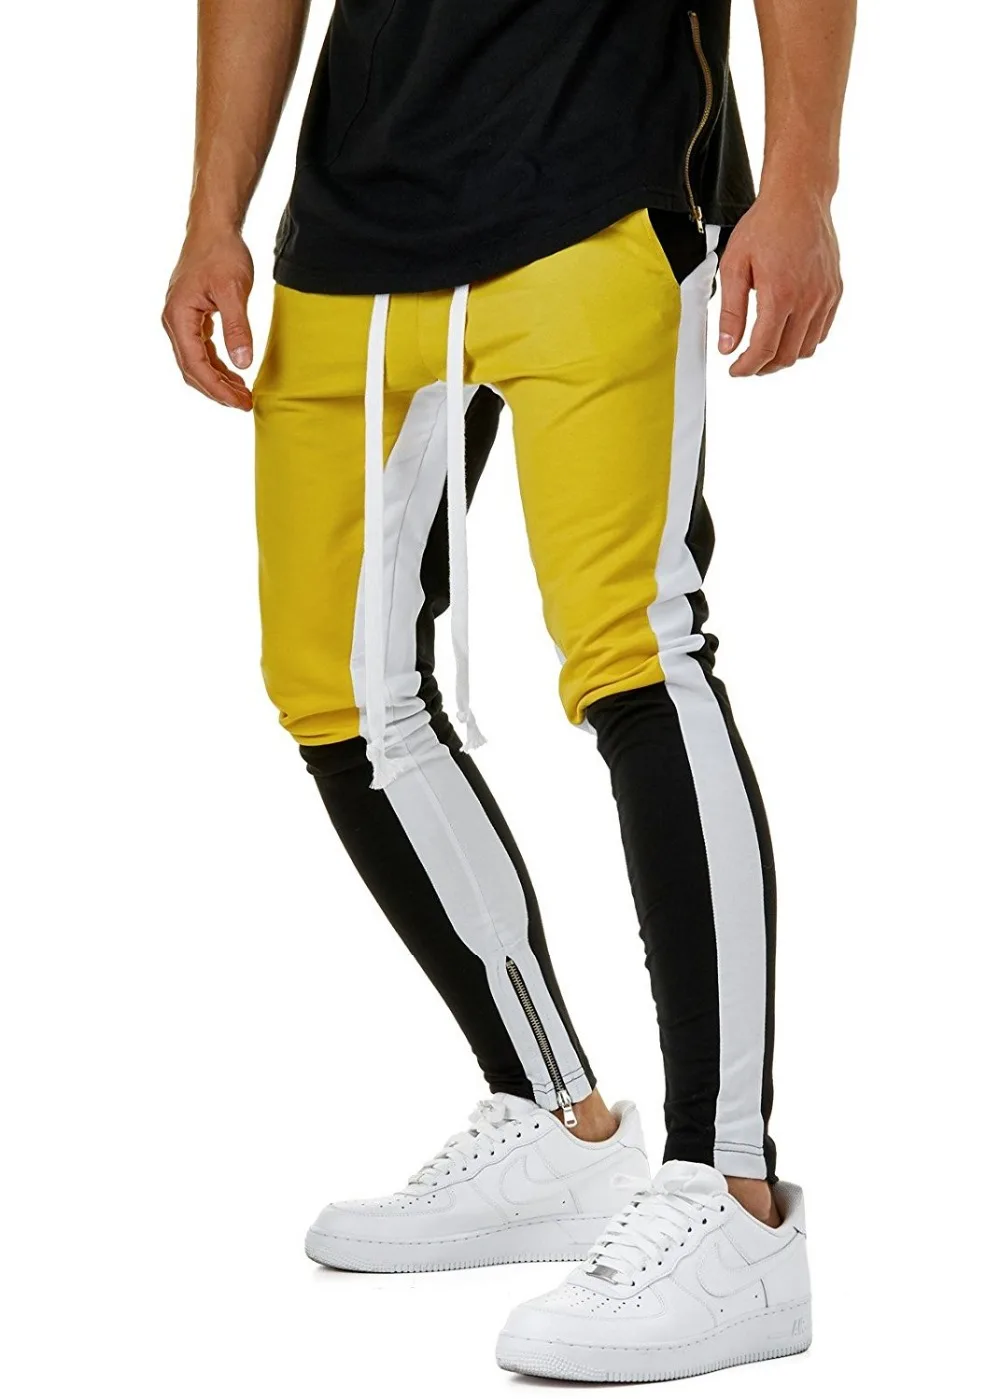 BINHIIRO, мужские брюки, повседневные, хлопок, средняя эластичная талия, сплайсированные, брюки-карандаш, красные, желтые, обтягивающие, спортивные штаны, брюки для бега